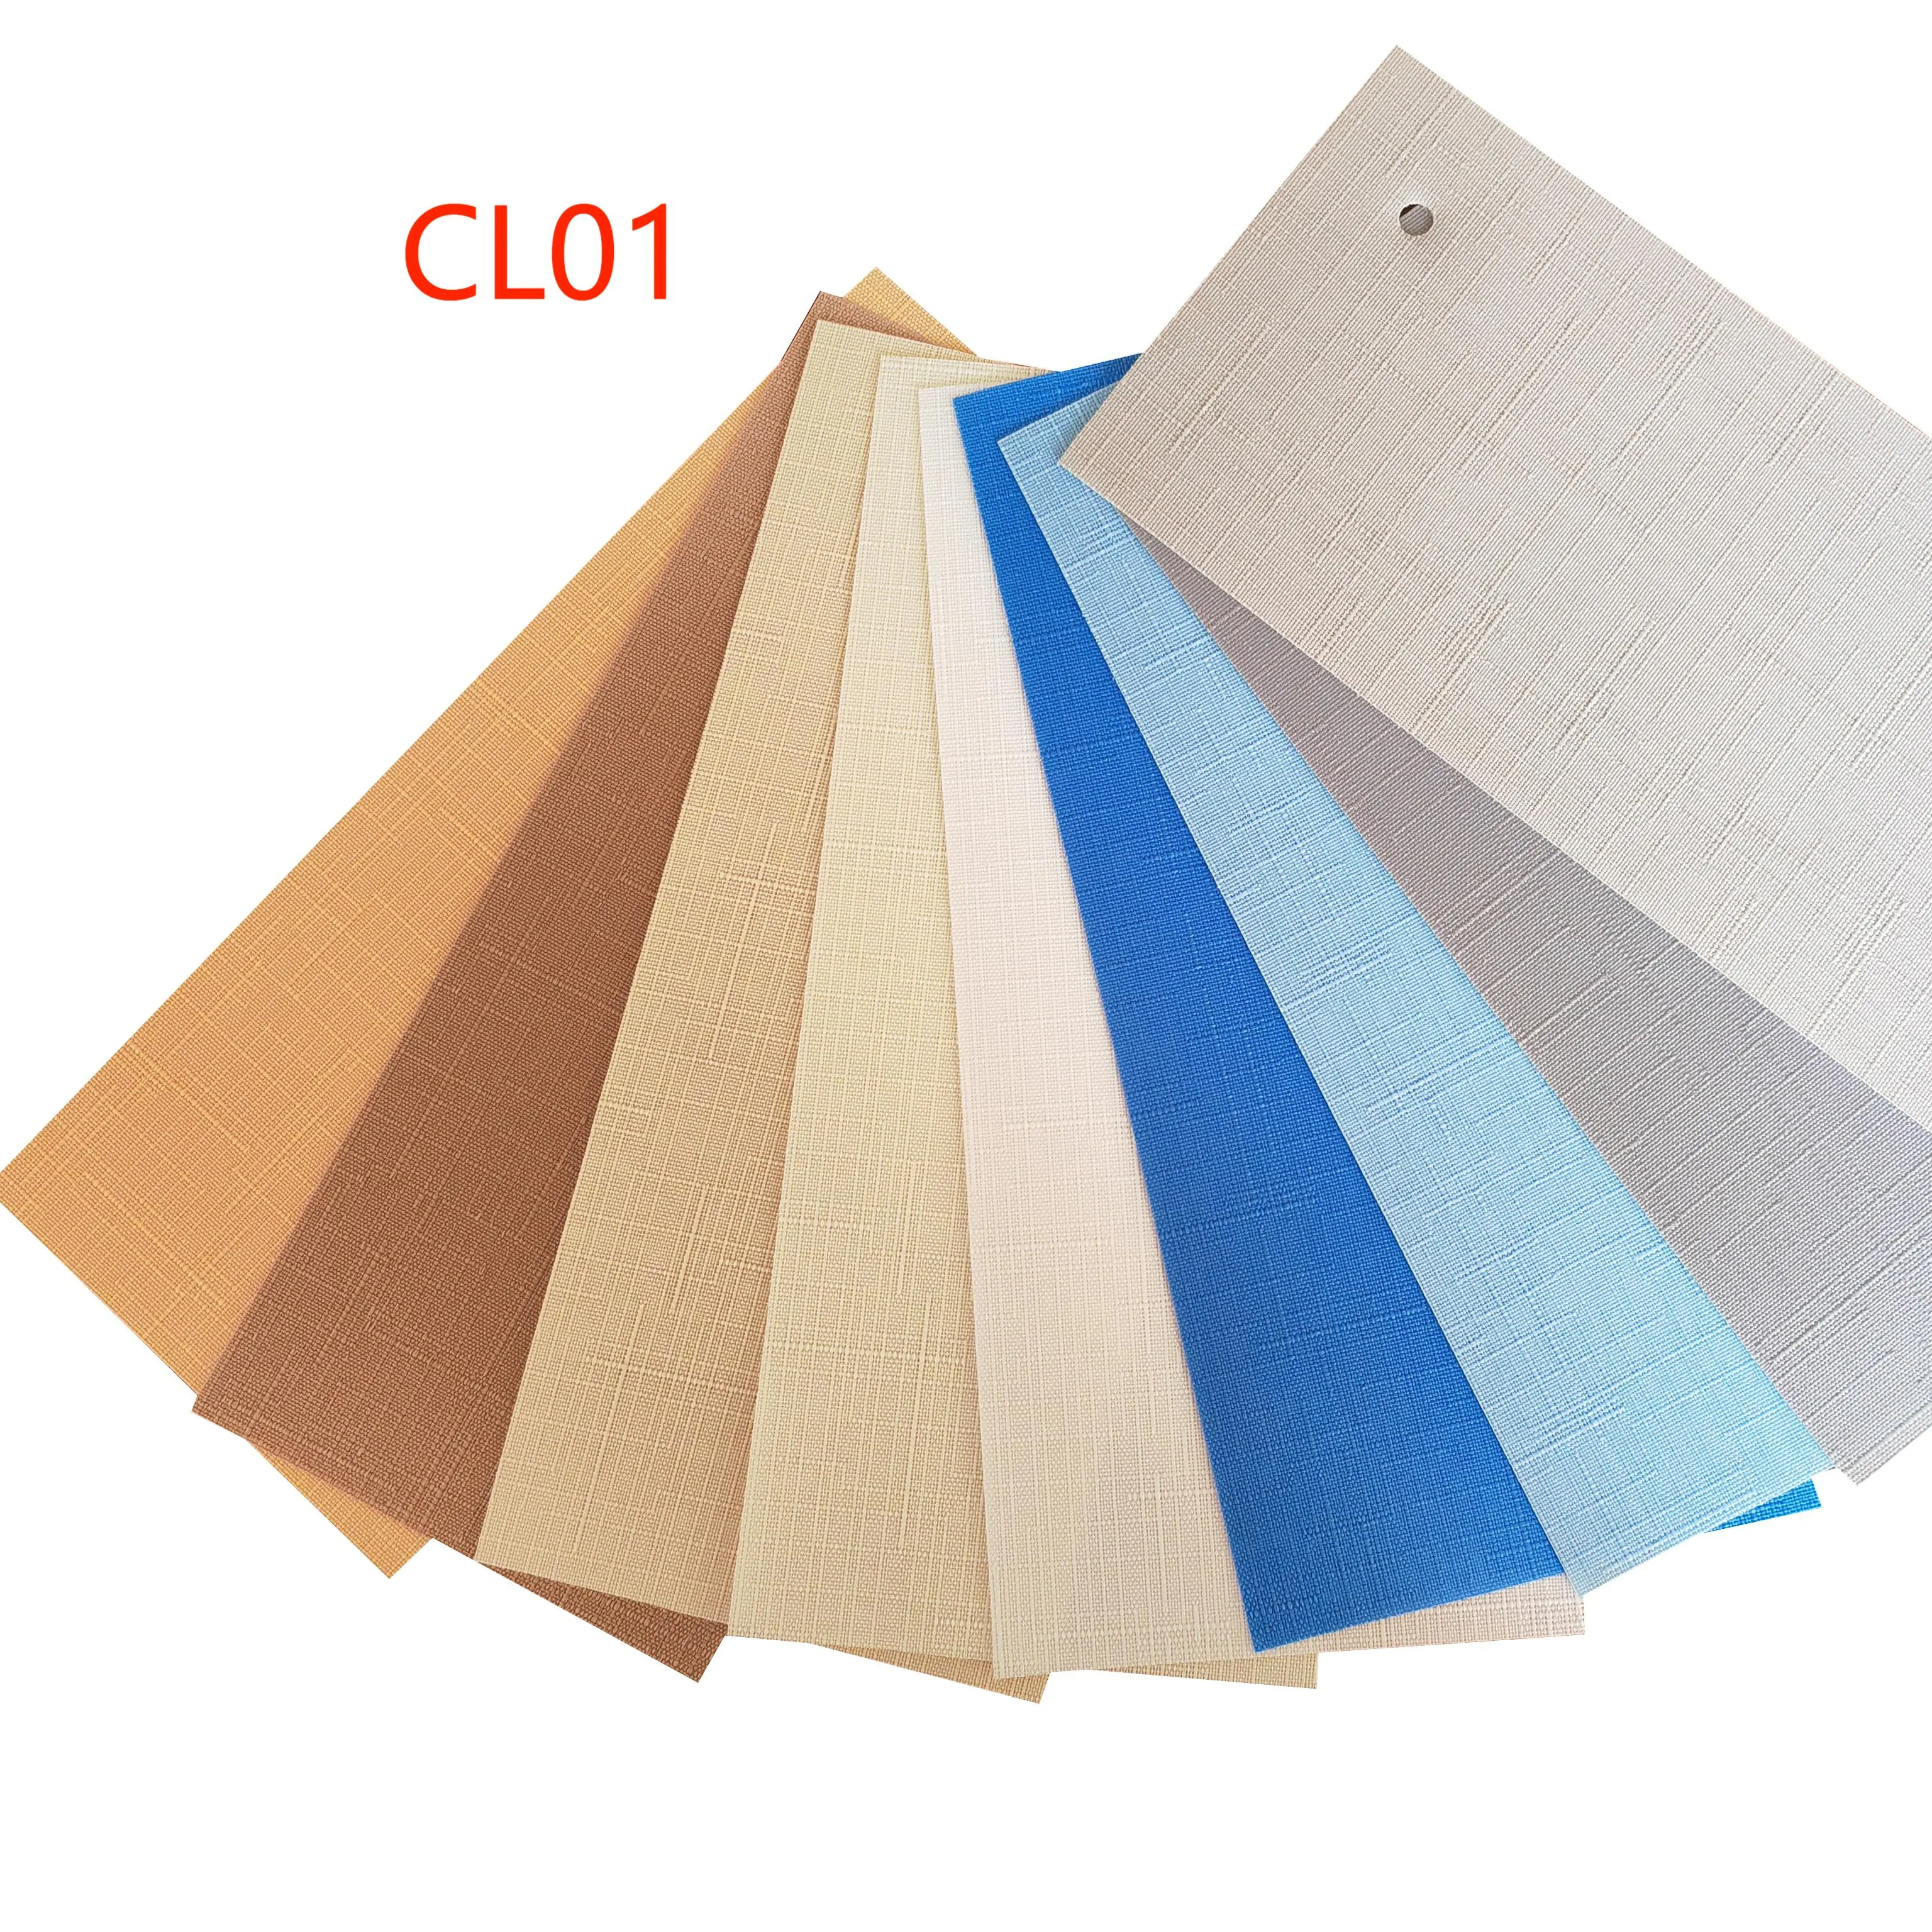 CL01 श्रृंखला 89MM कपड़े ऊर्ध्वाधर अंधा कर रही है के साथ कई रंग पारदर्शी कपड़े अंधकार रोलर कार्यक्षेत्र खिड़की अंधा